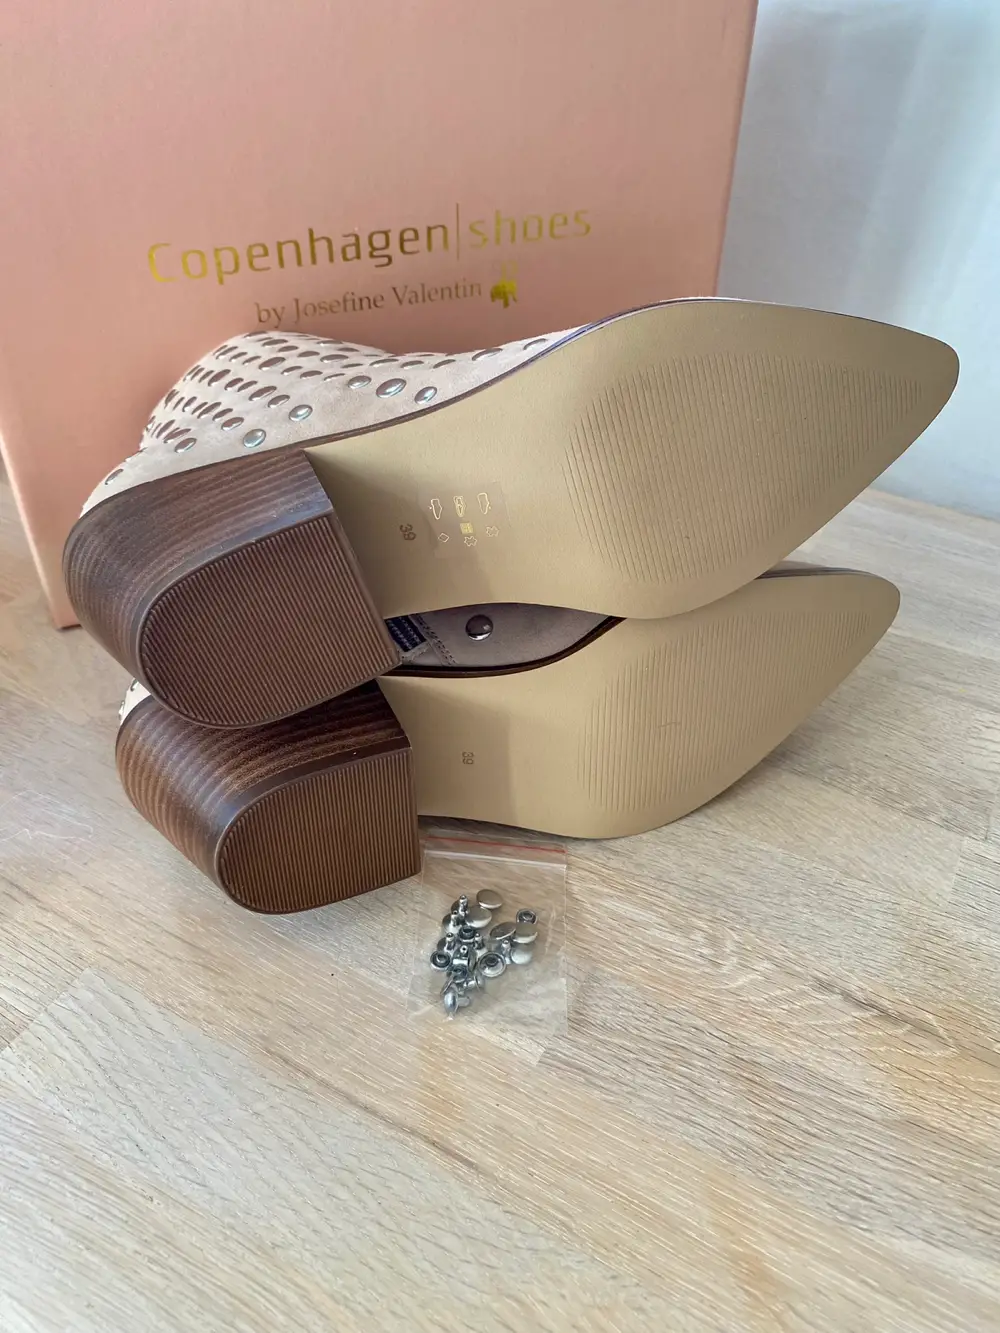 Køb Copenhagen shoes Nye støvler i størrelse 39 af Lærke på Reshopper · Shop til børn, mor og bolig